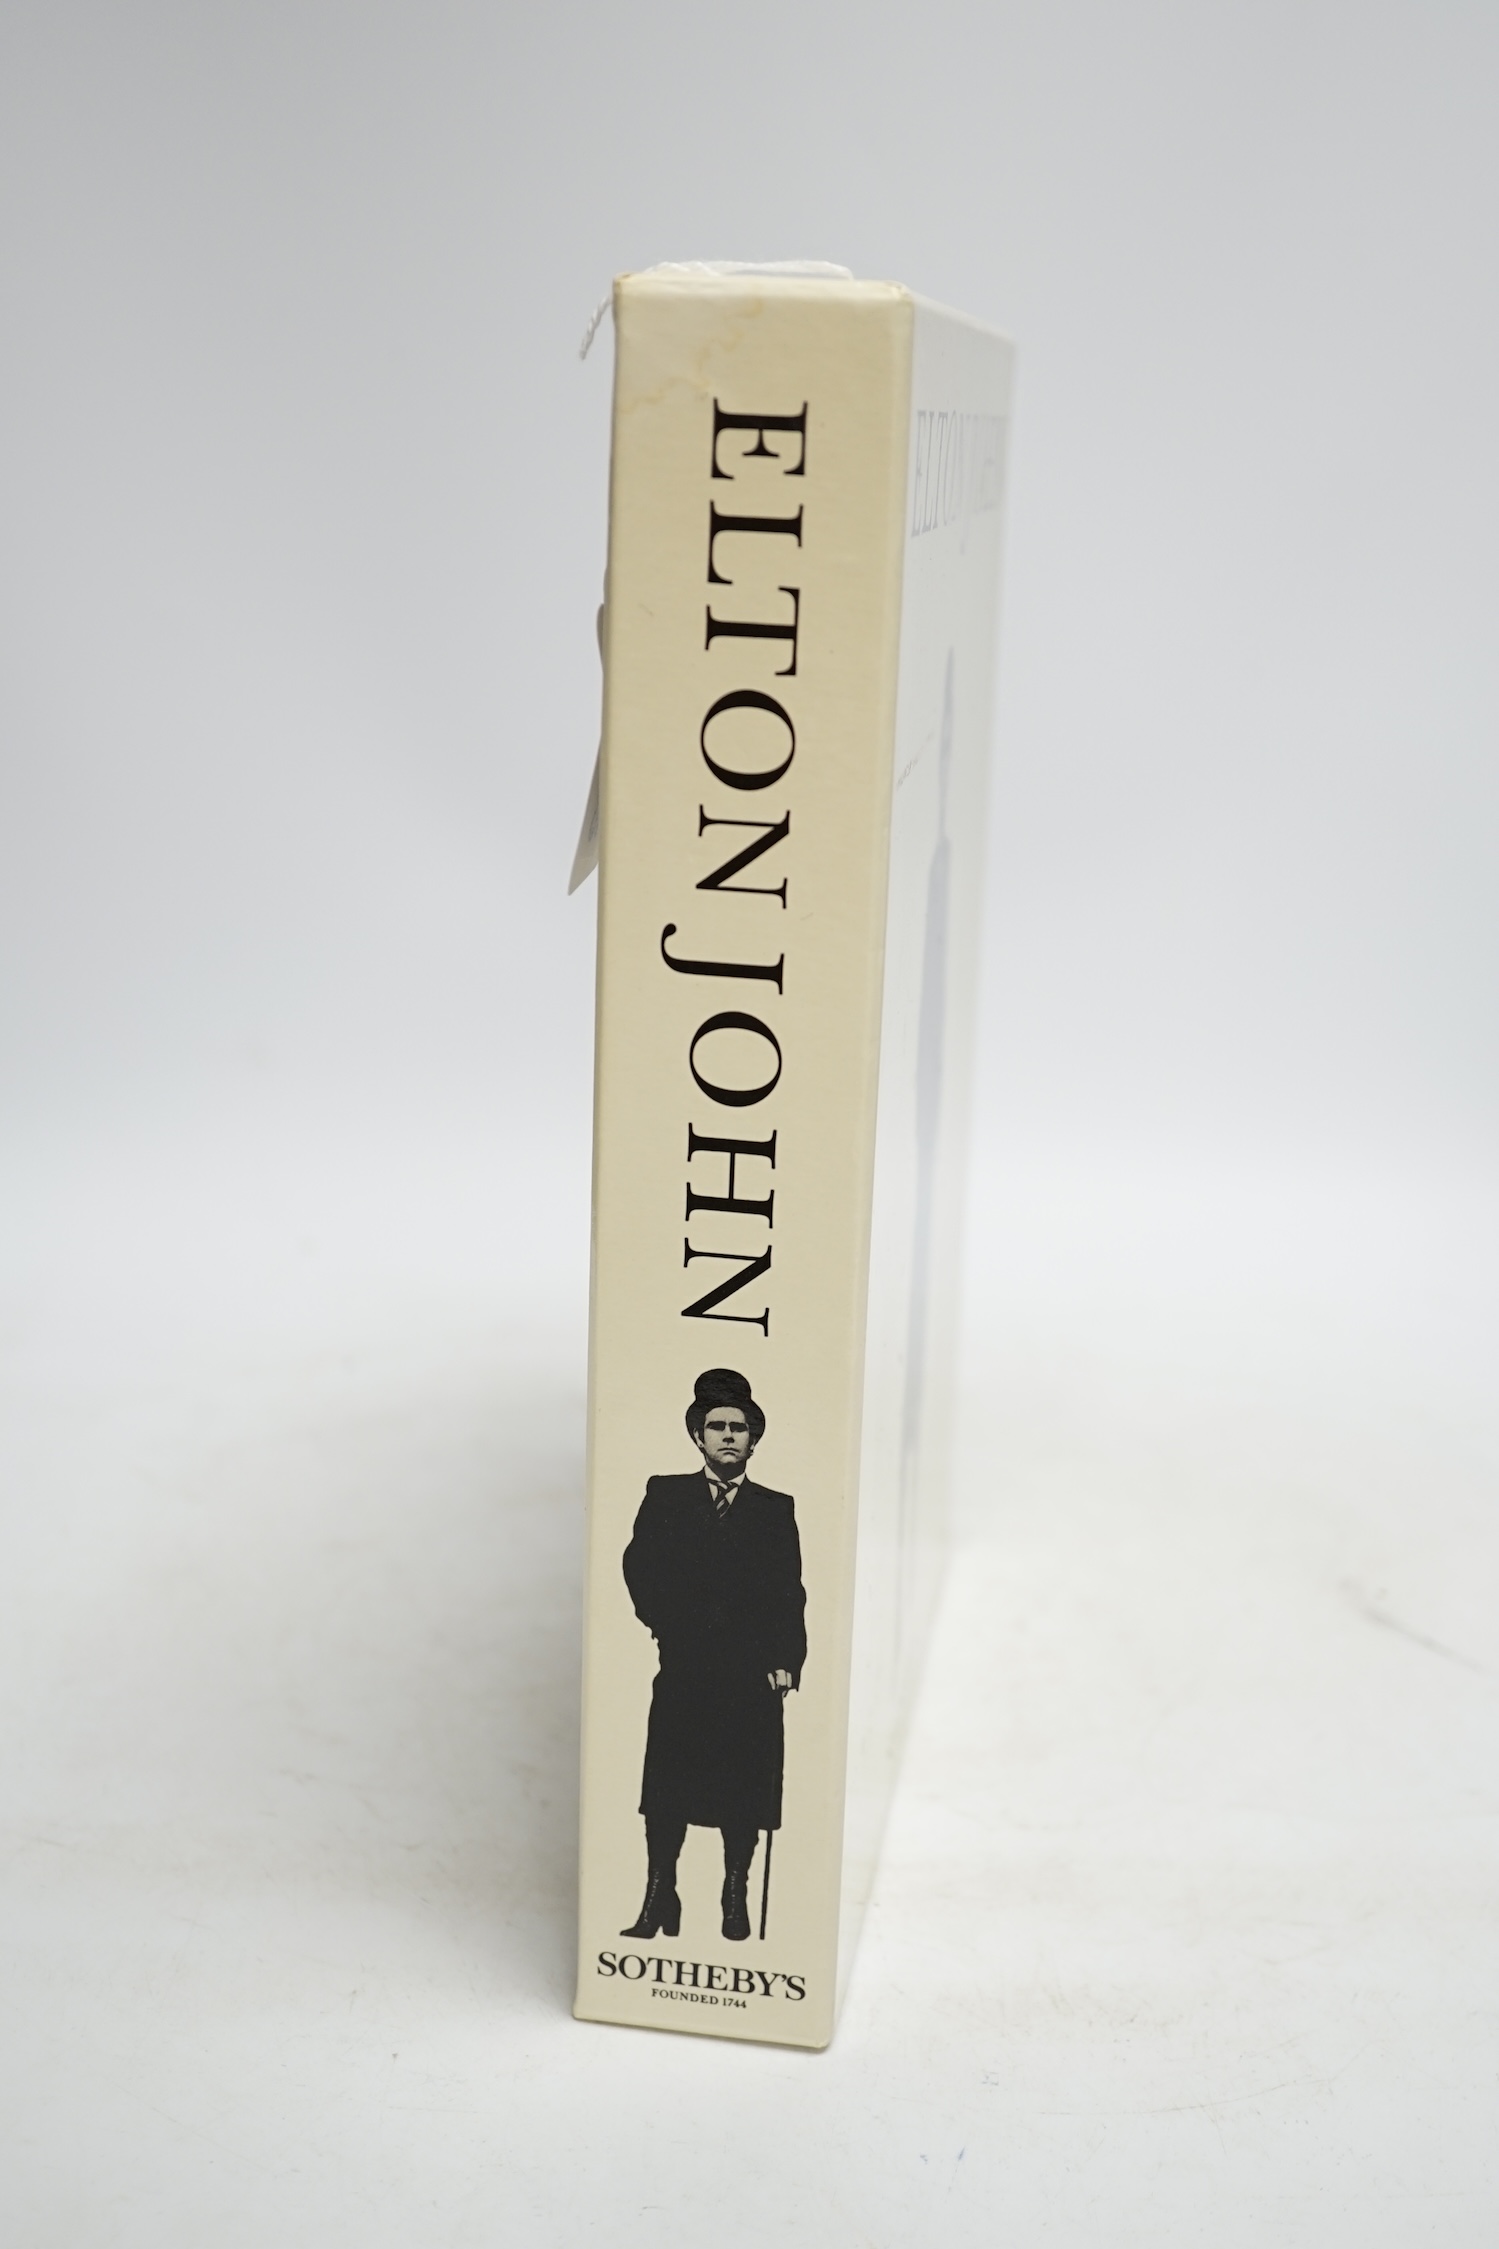 Elton John Sotheby's 1988 set of catalogues. Condition - fair